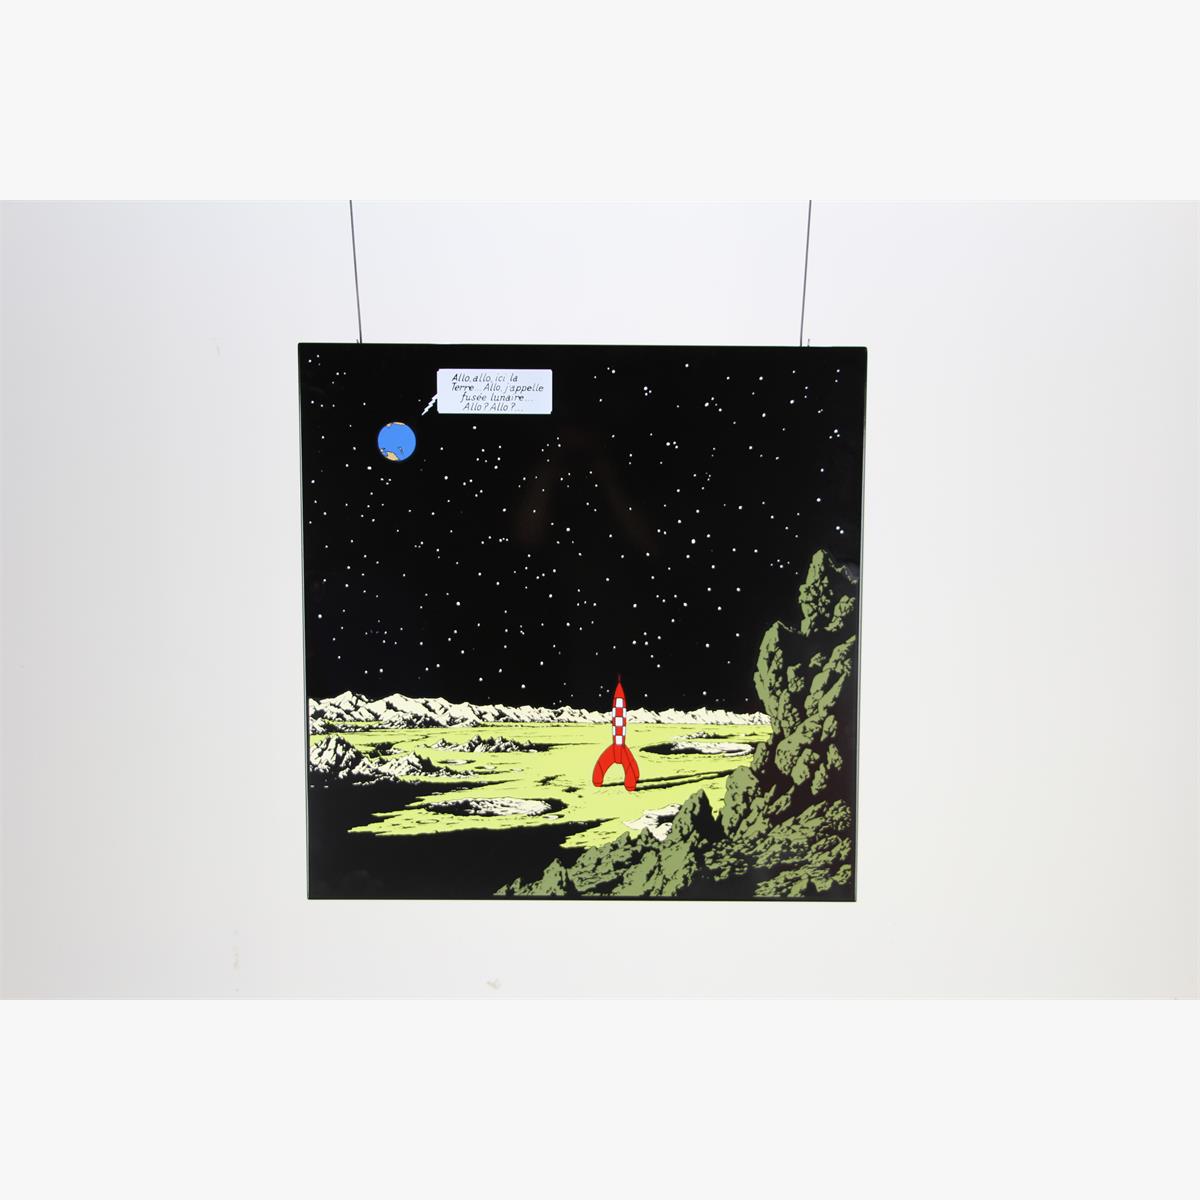 Afbeeldingen van emaille bord kuifje  uit het album mannen op de maan franse tekst plaque émaillée 99 ex 1985 